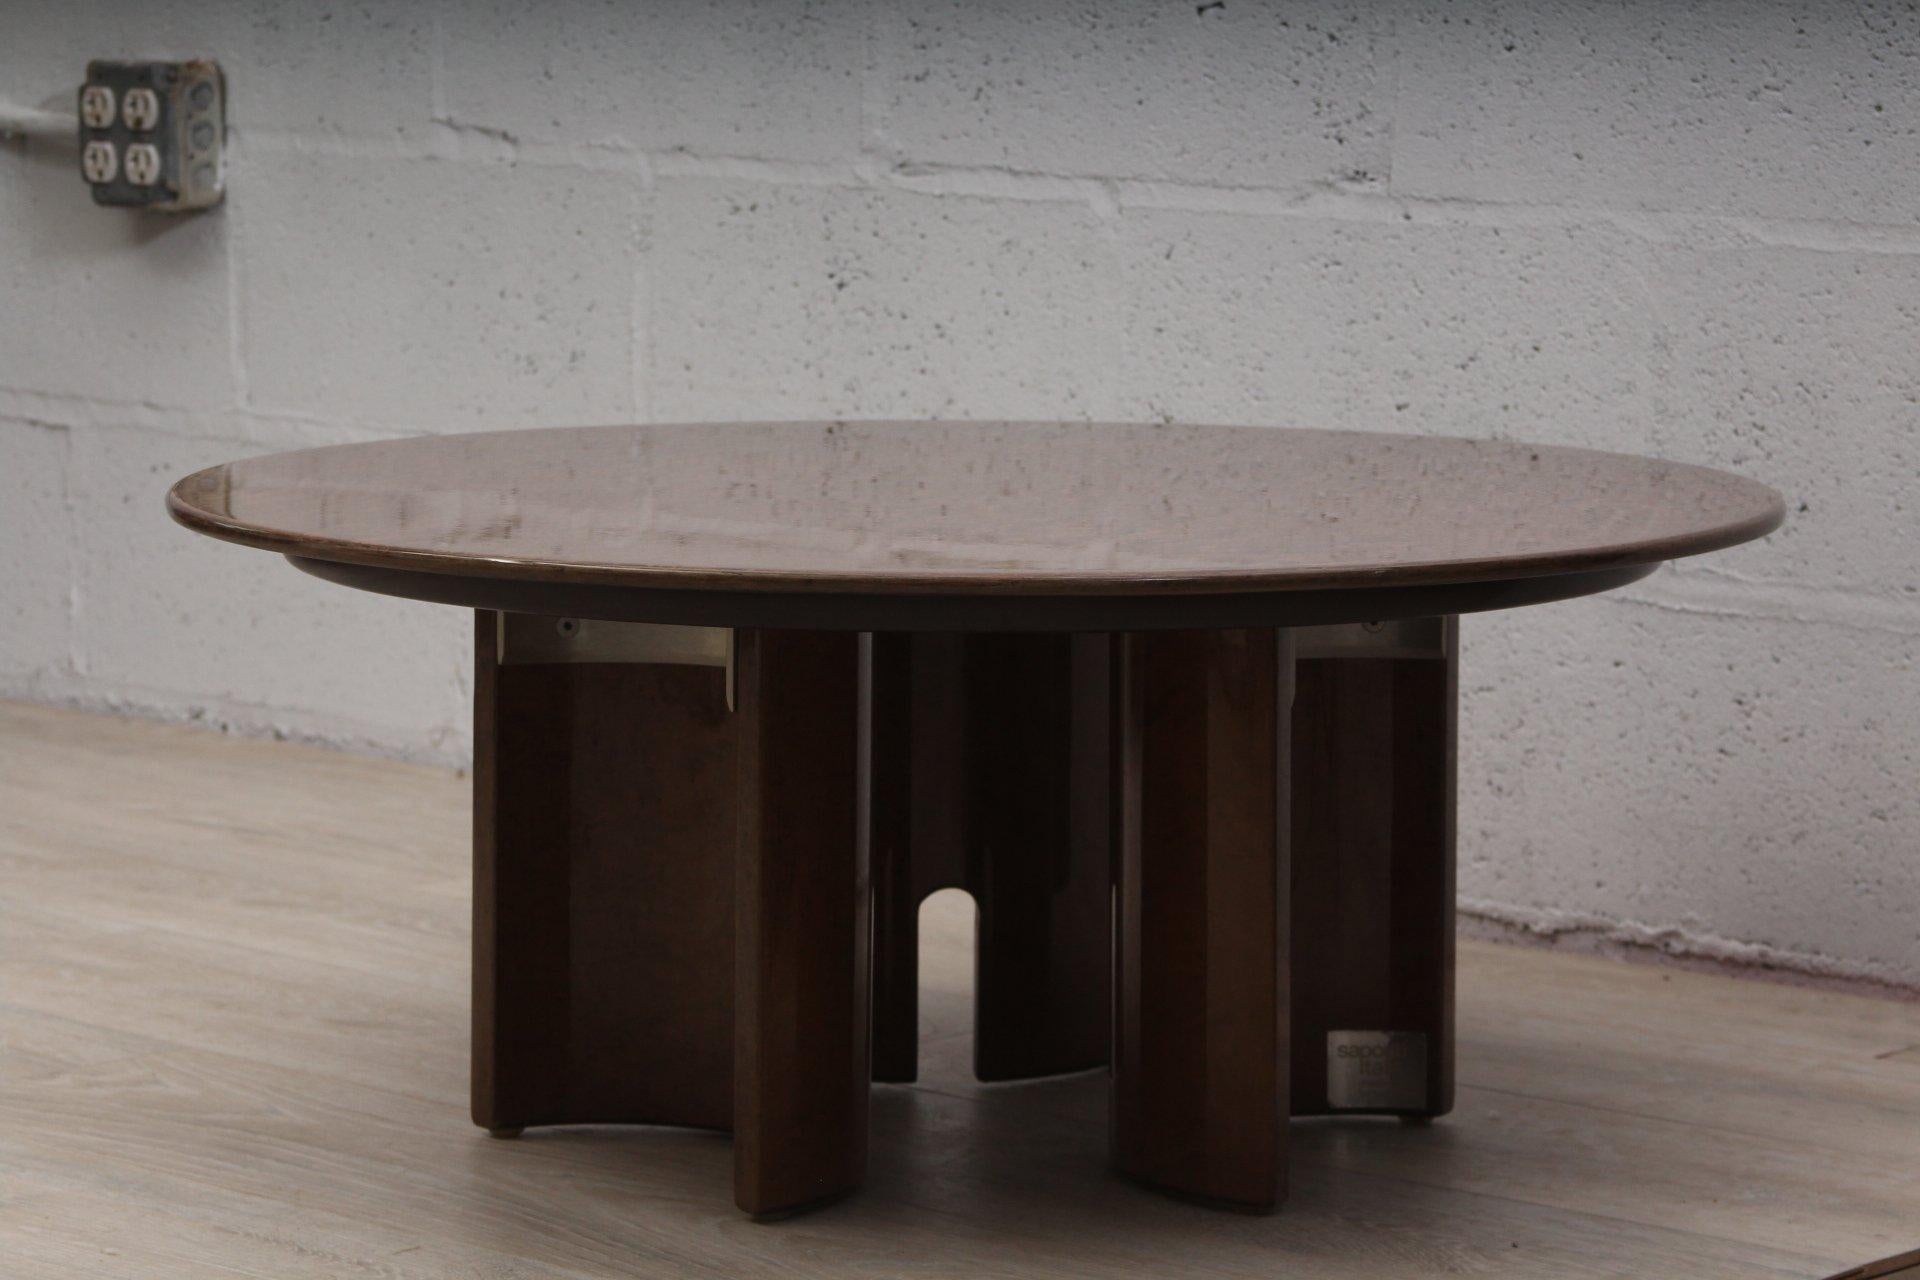 Paire de tables basses rondes assorties de Giovanni Offredi pour Saporiti.

Fabriqué en Italie, vers 1970.

Fabriqué en bois plaqué érable piqué, le socle est supporté par quatre piliers démilunies, mettant en valeur des détails sculpturaux en forme